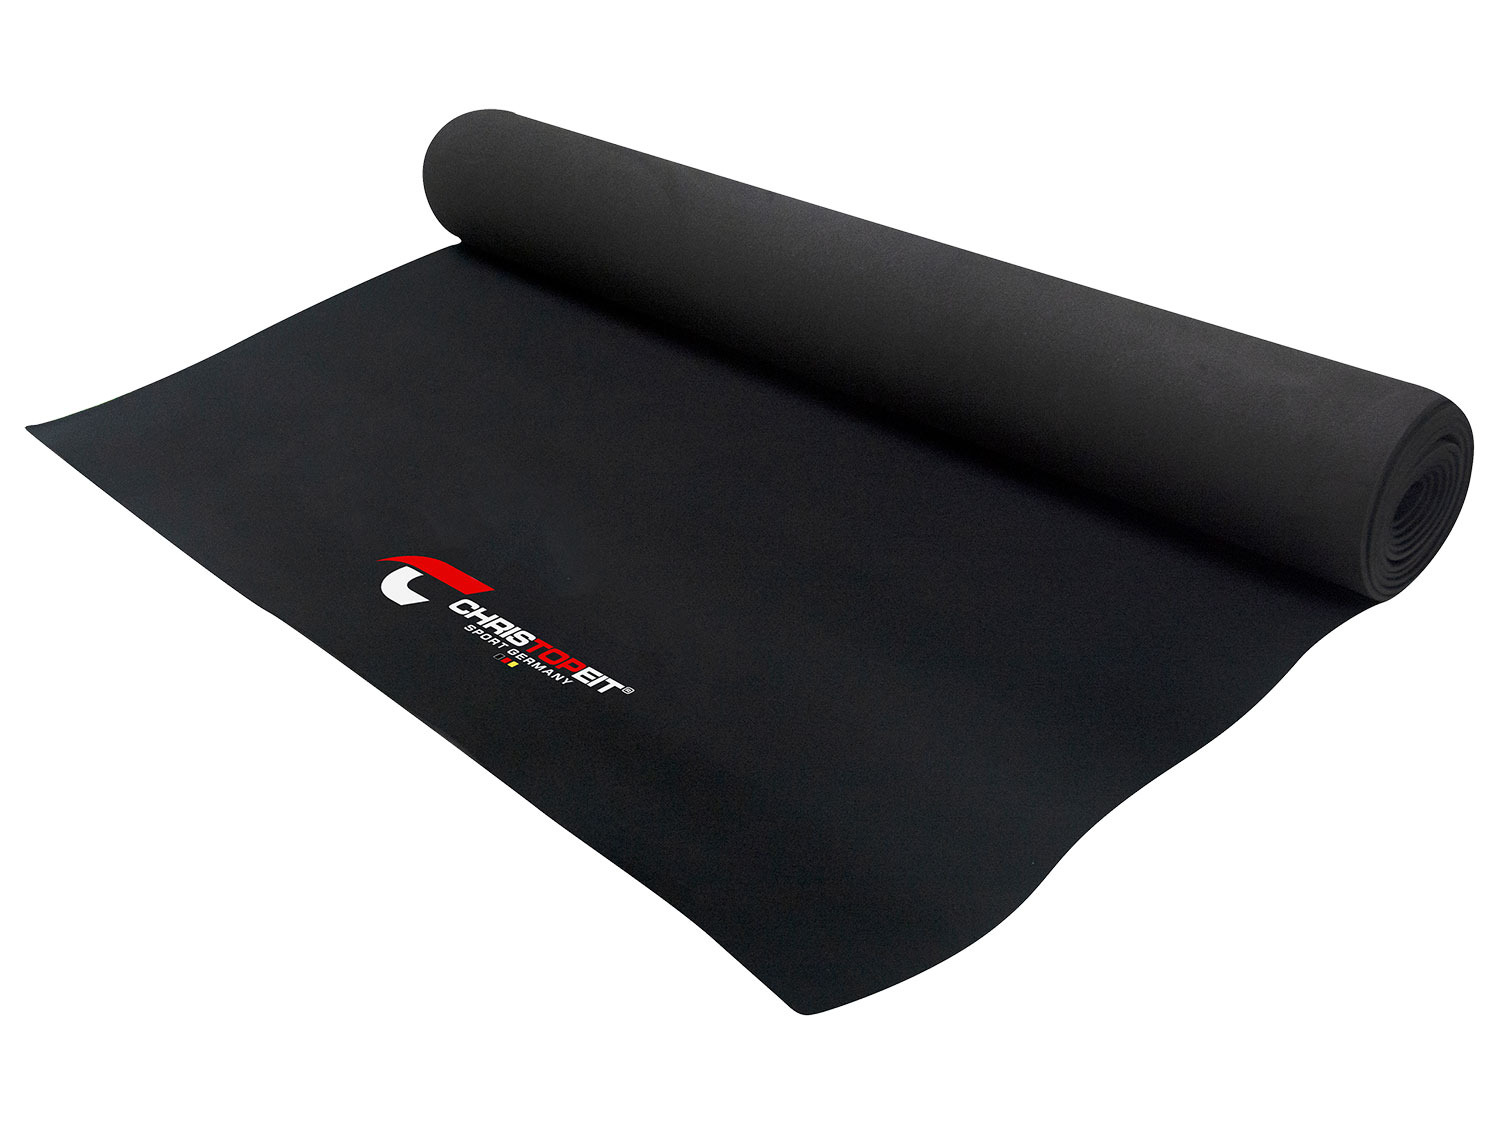 Bodenschutzmatte für Fitnessgeräte - Grösse L - 100 × 200 cm